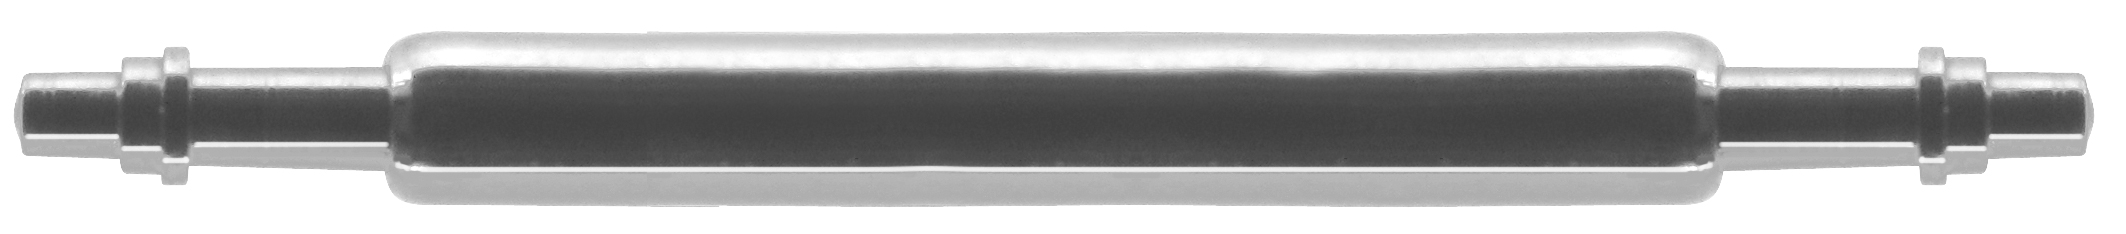 Veerkam 215E edelstaal wit, Ø 1,5 lengte 28,0 mm, tappen met aanzet